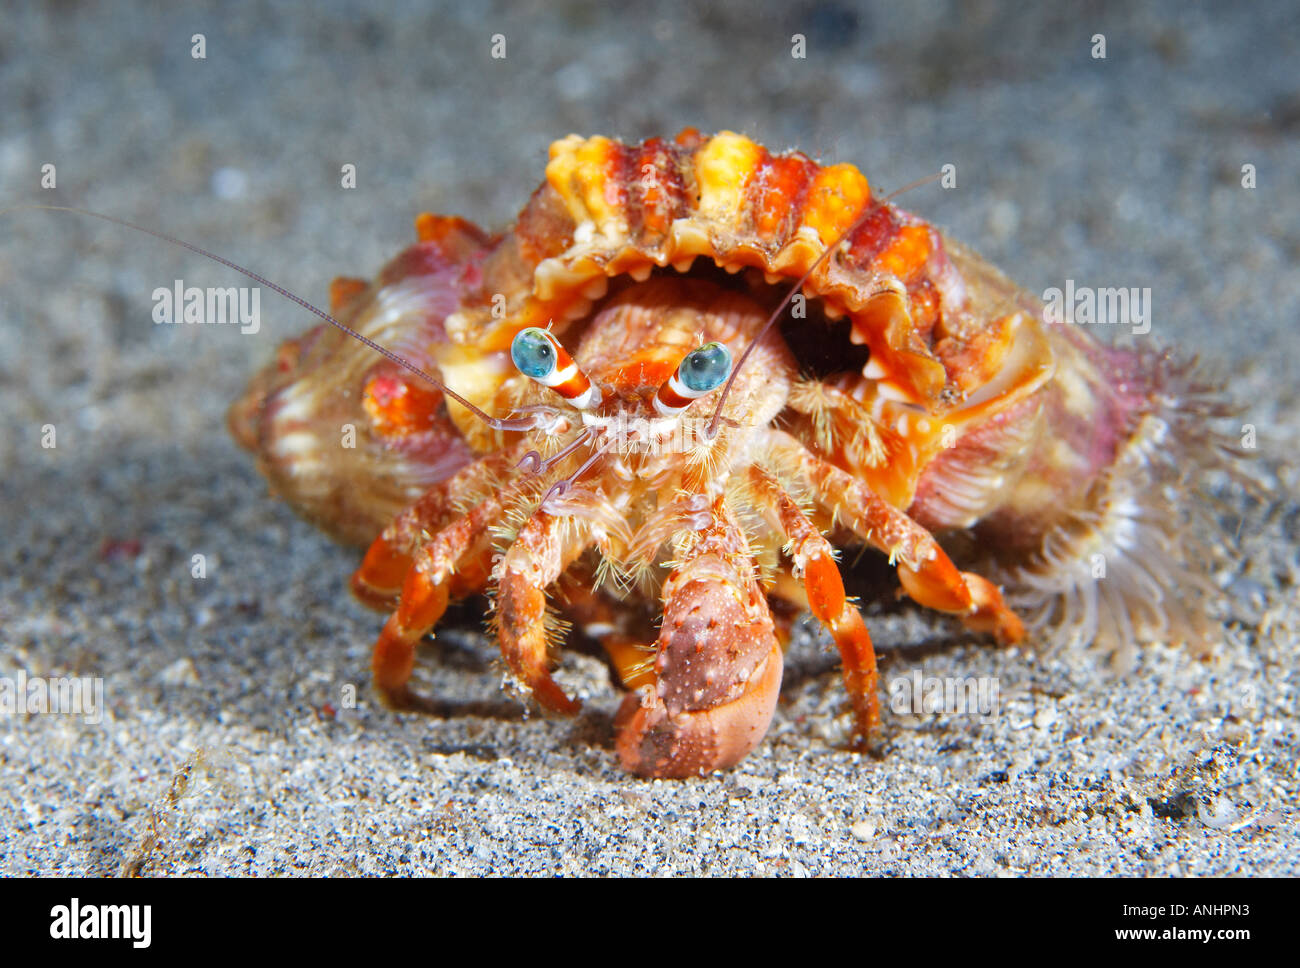 Anemone Hermit Crab (Dardanus pedunculatus) North Sulawesi Indonesia Stock Photo